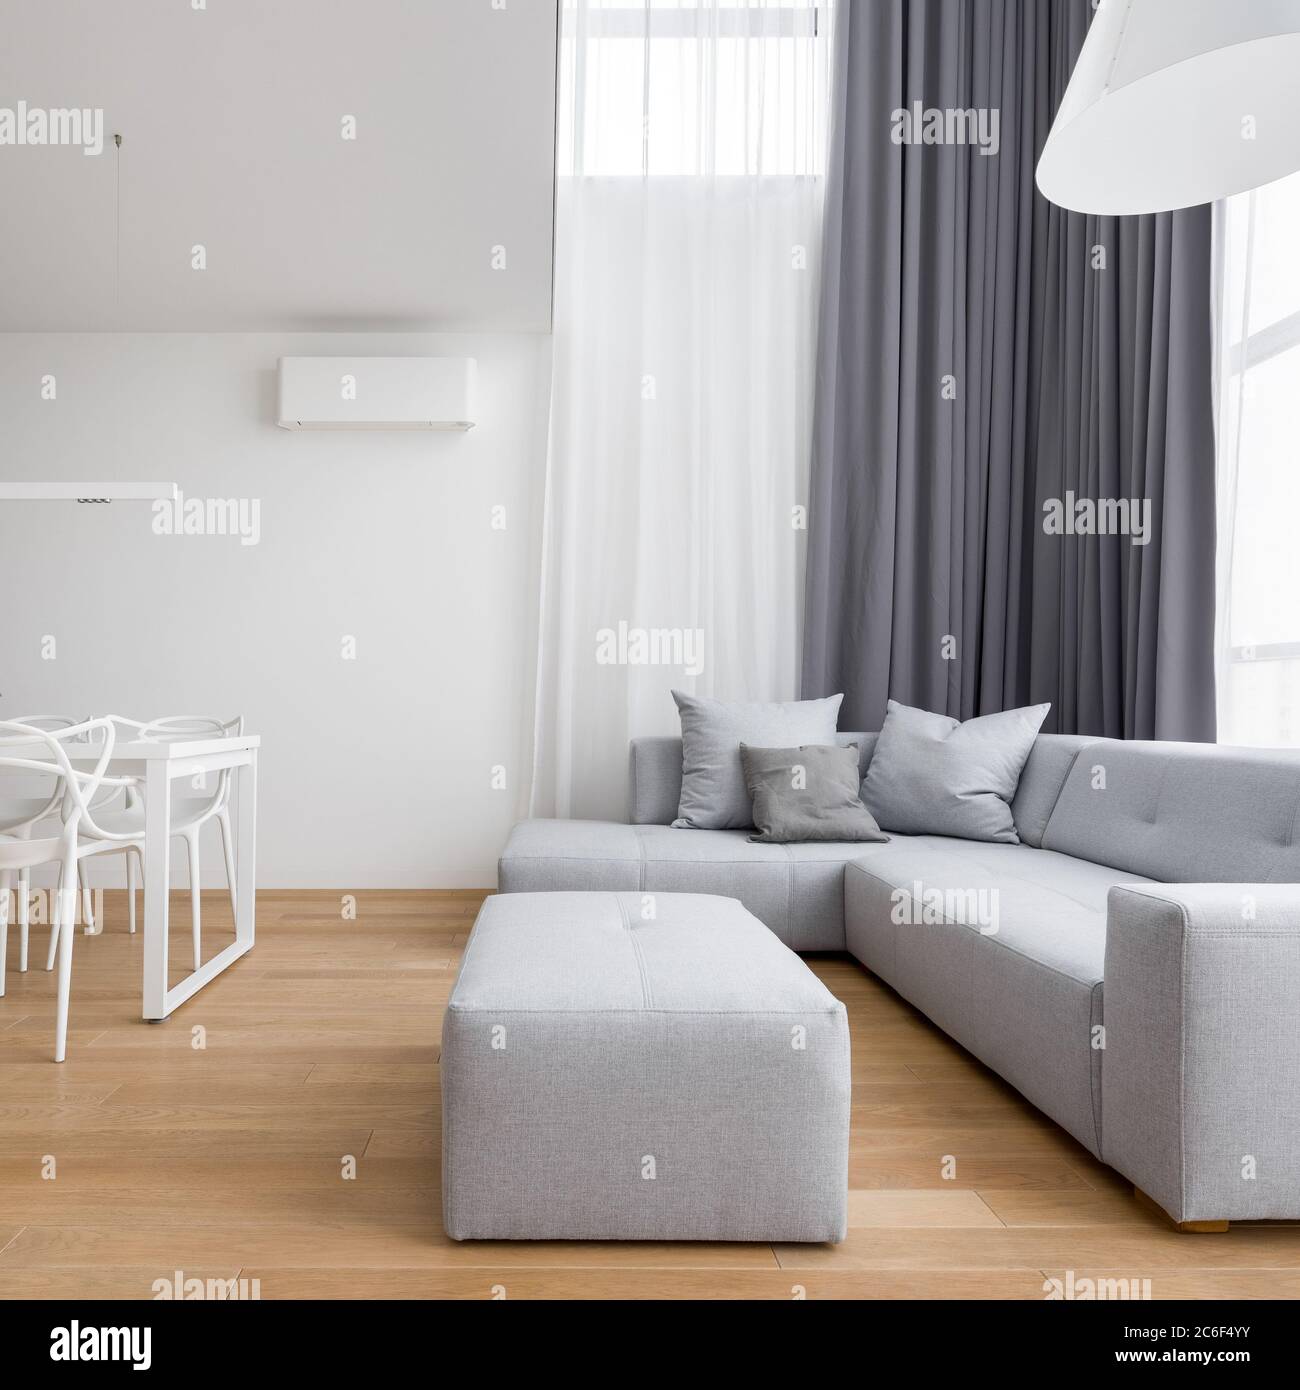 Wohnzimmer im minimalistischen Design mit grauem Ecksofa und langen Fenstervorhängen Stockfoto